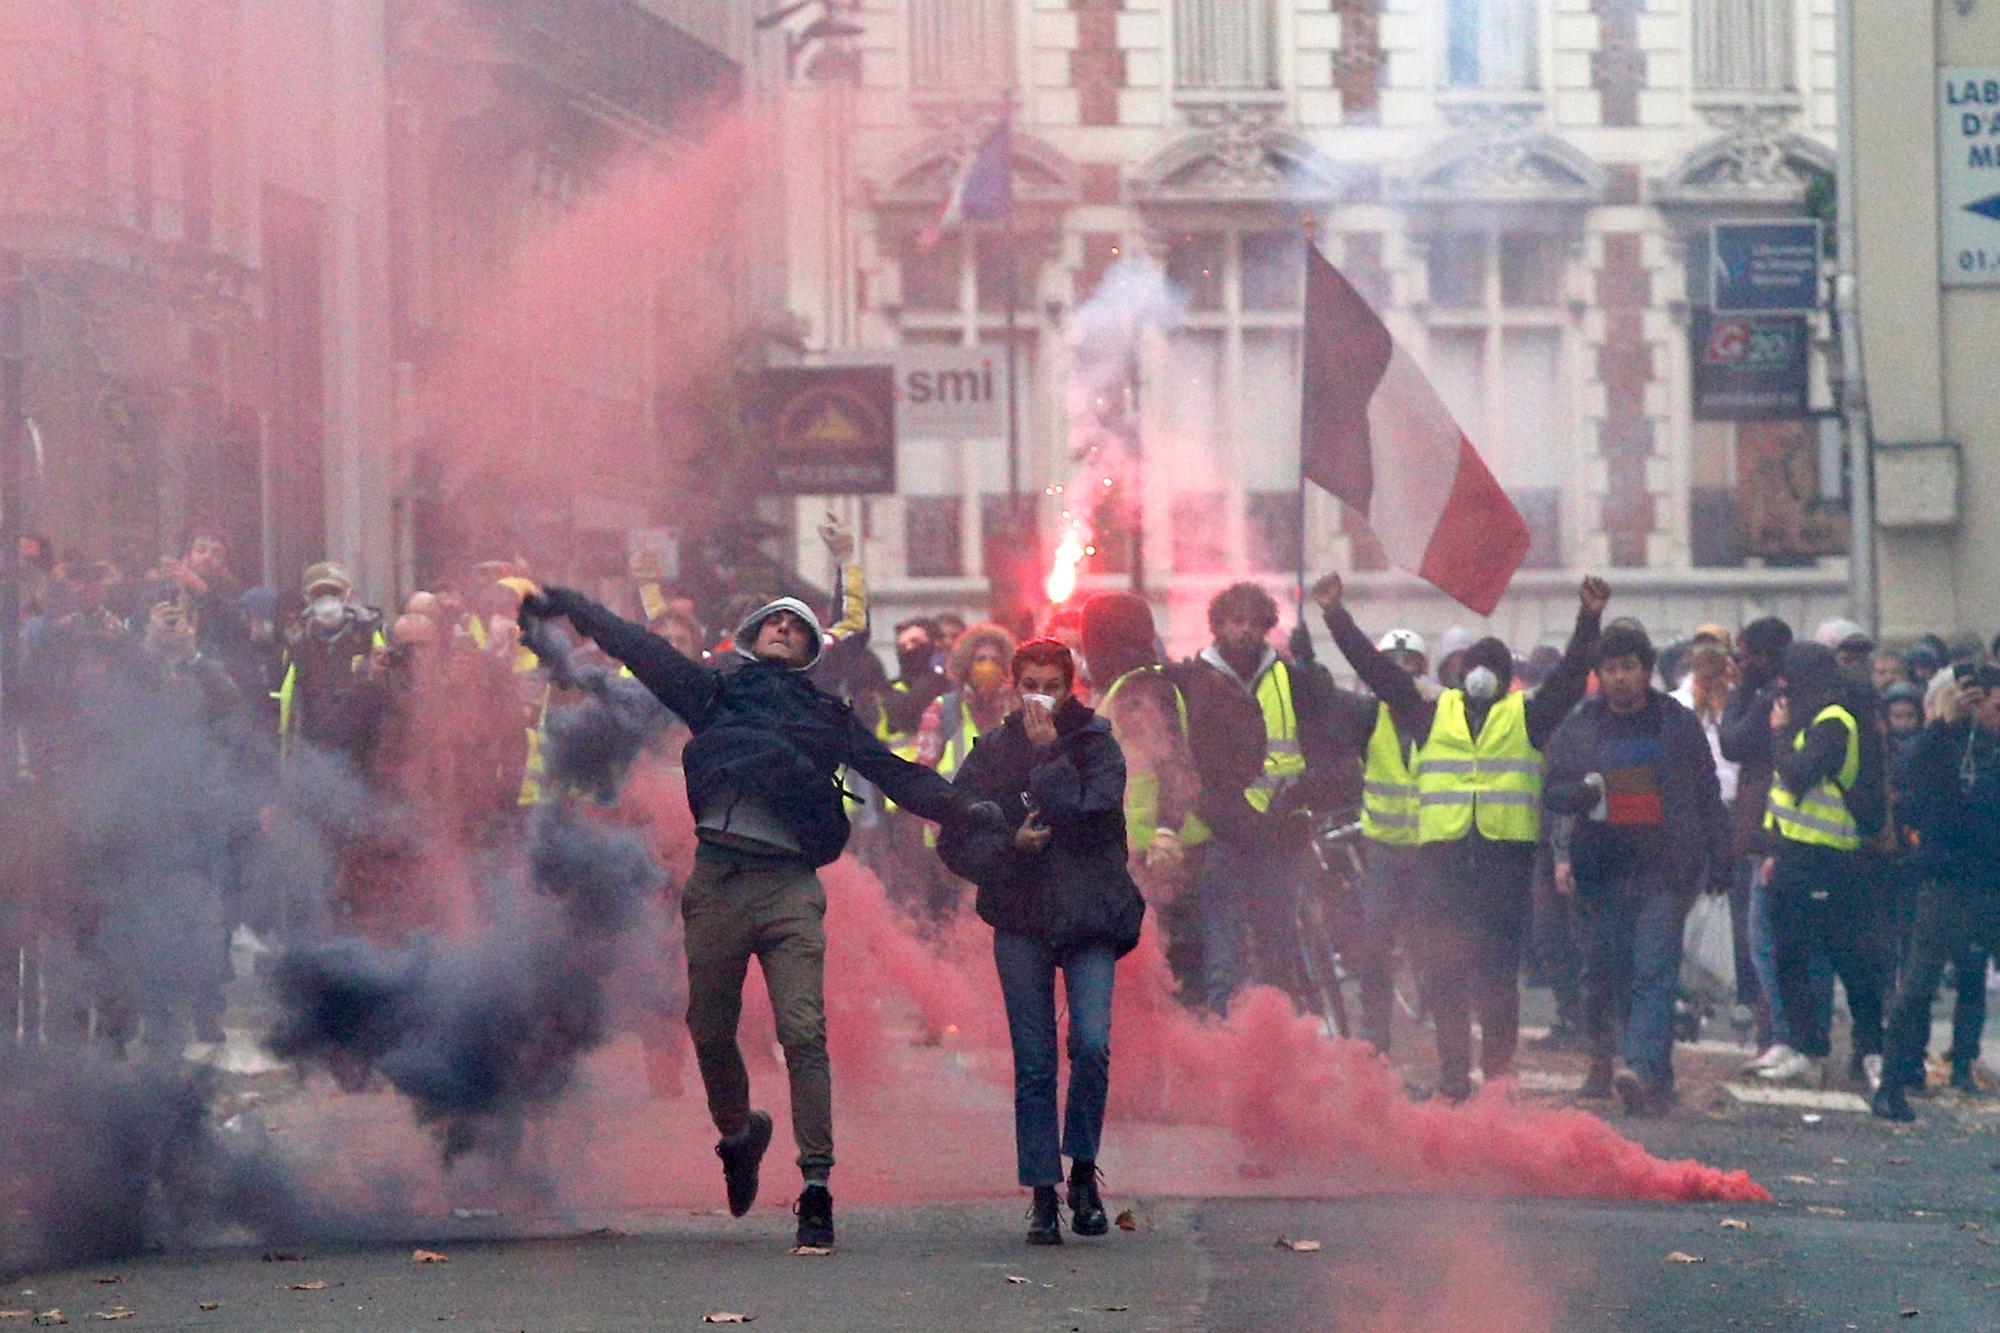 Los manifestantes lanzan objetos y devuelven las bombas de gases lacrimógenos lanzadas por la policía antimotines en la Avenida de Los Campos Eliseos de París, Francia.